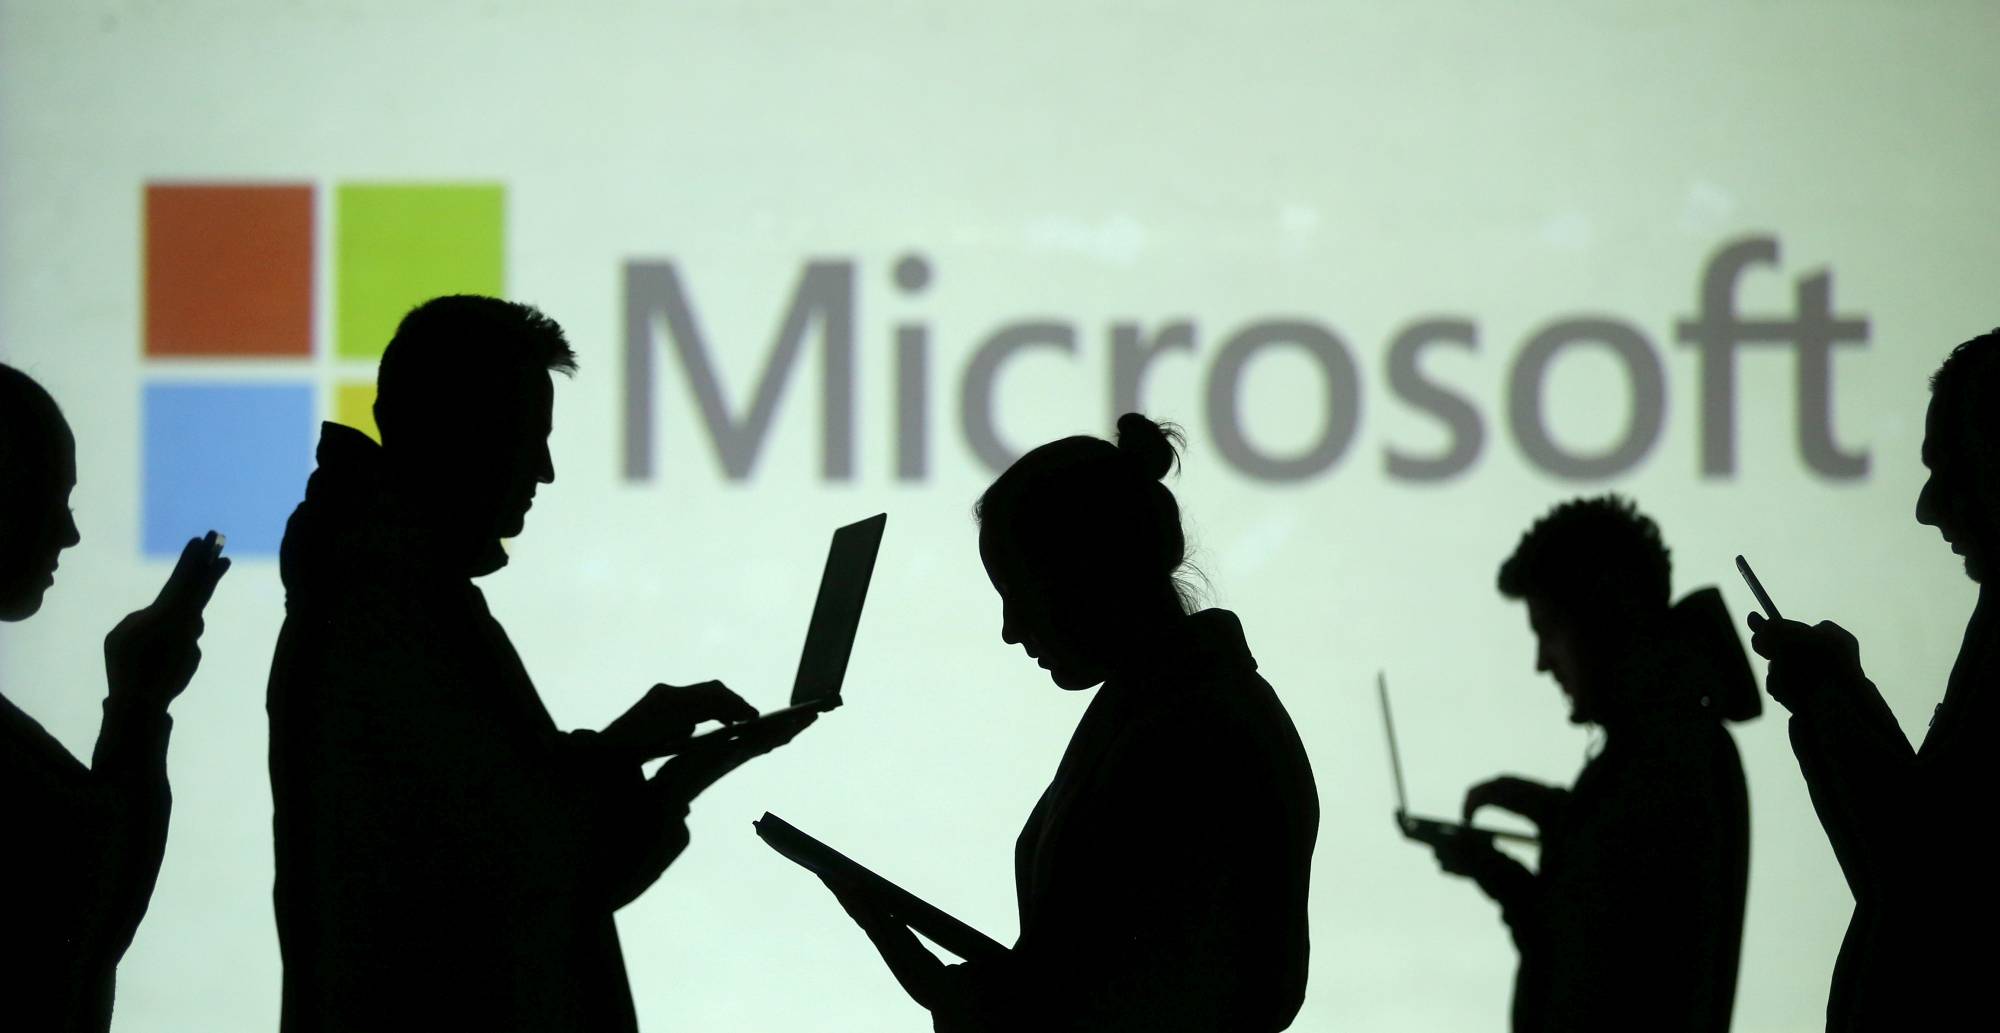 Microsoft: การหยุดทำงานเป็นวงกว้างเมื่อเร็วๆ นี้เกิดจากการอัปเดต ไม่ใช่การโจมตีทางไซเบอร์